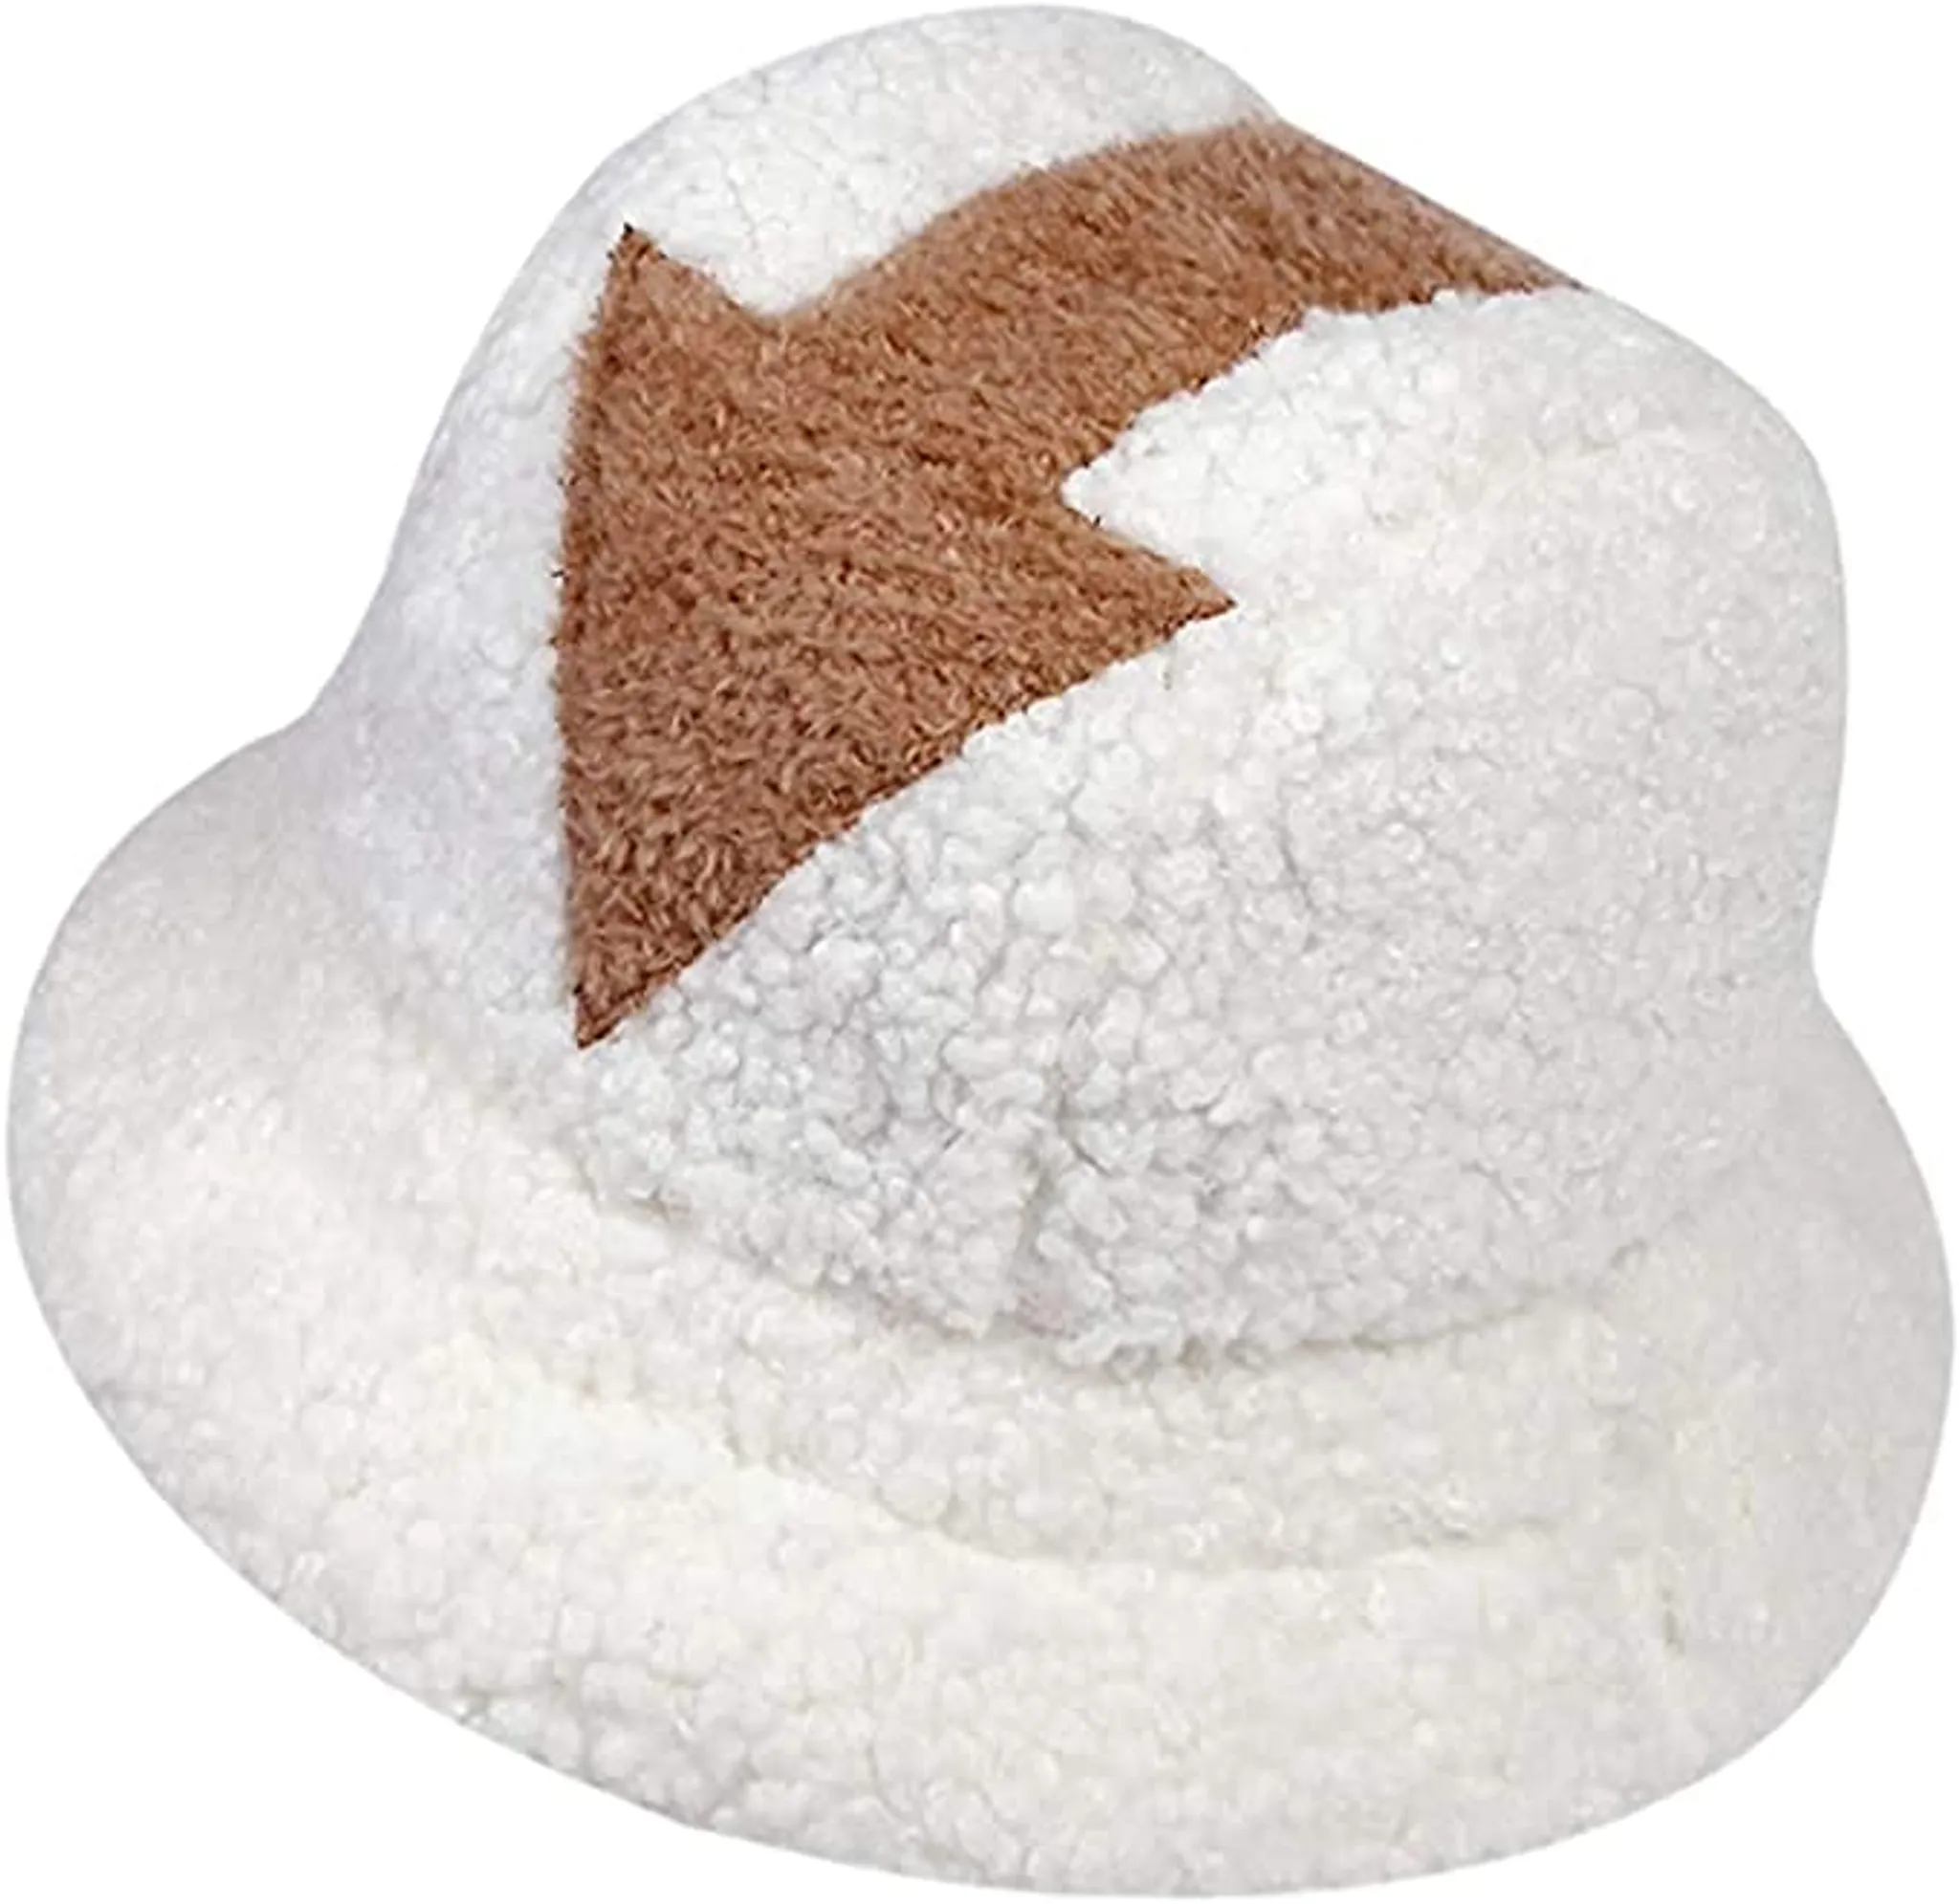 Bucket Hat, Uni Wolle Winter Warme Mützen,